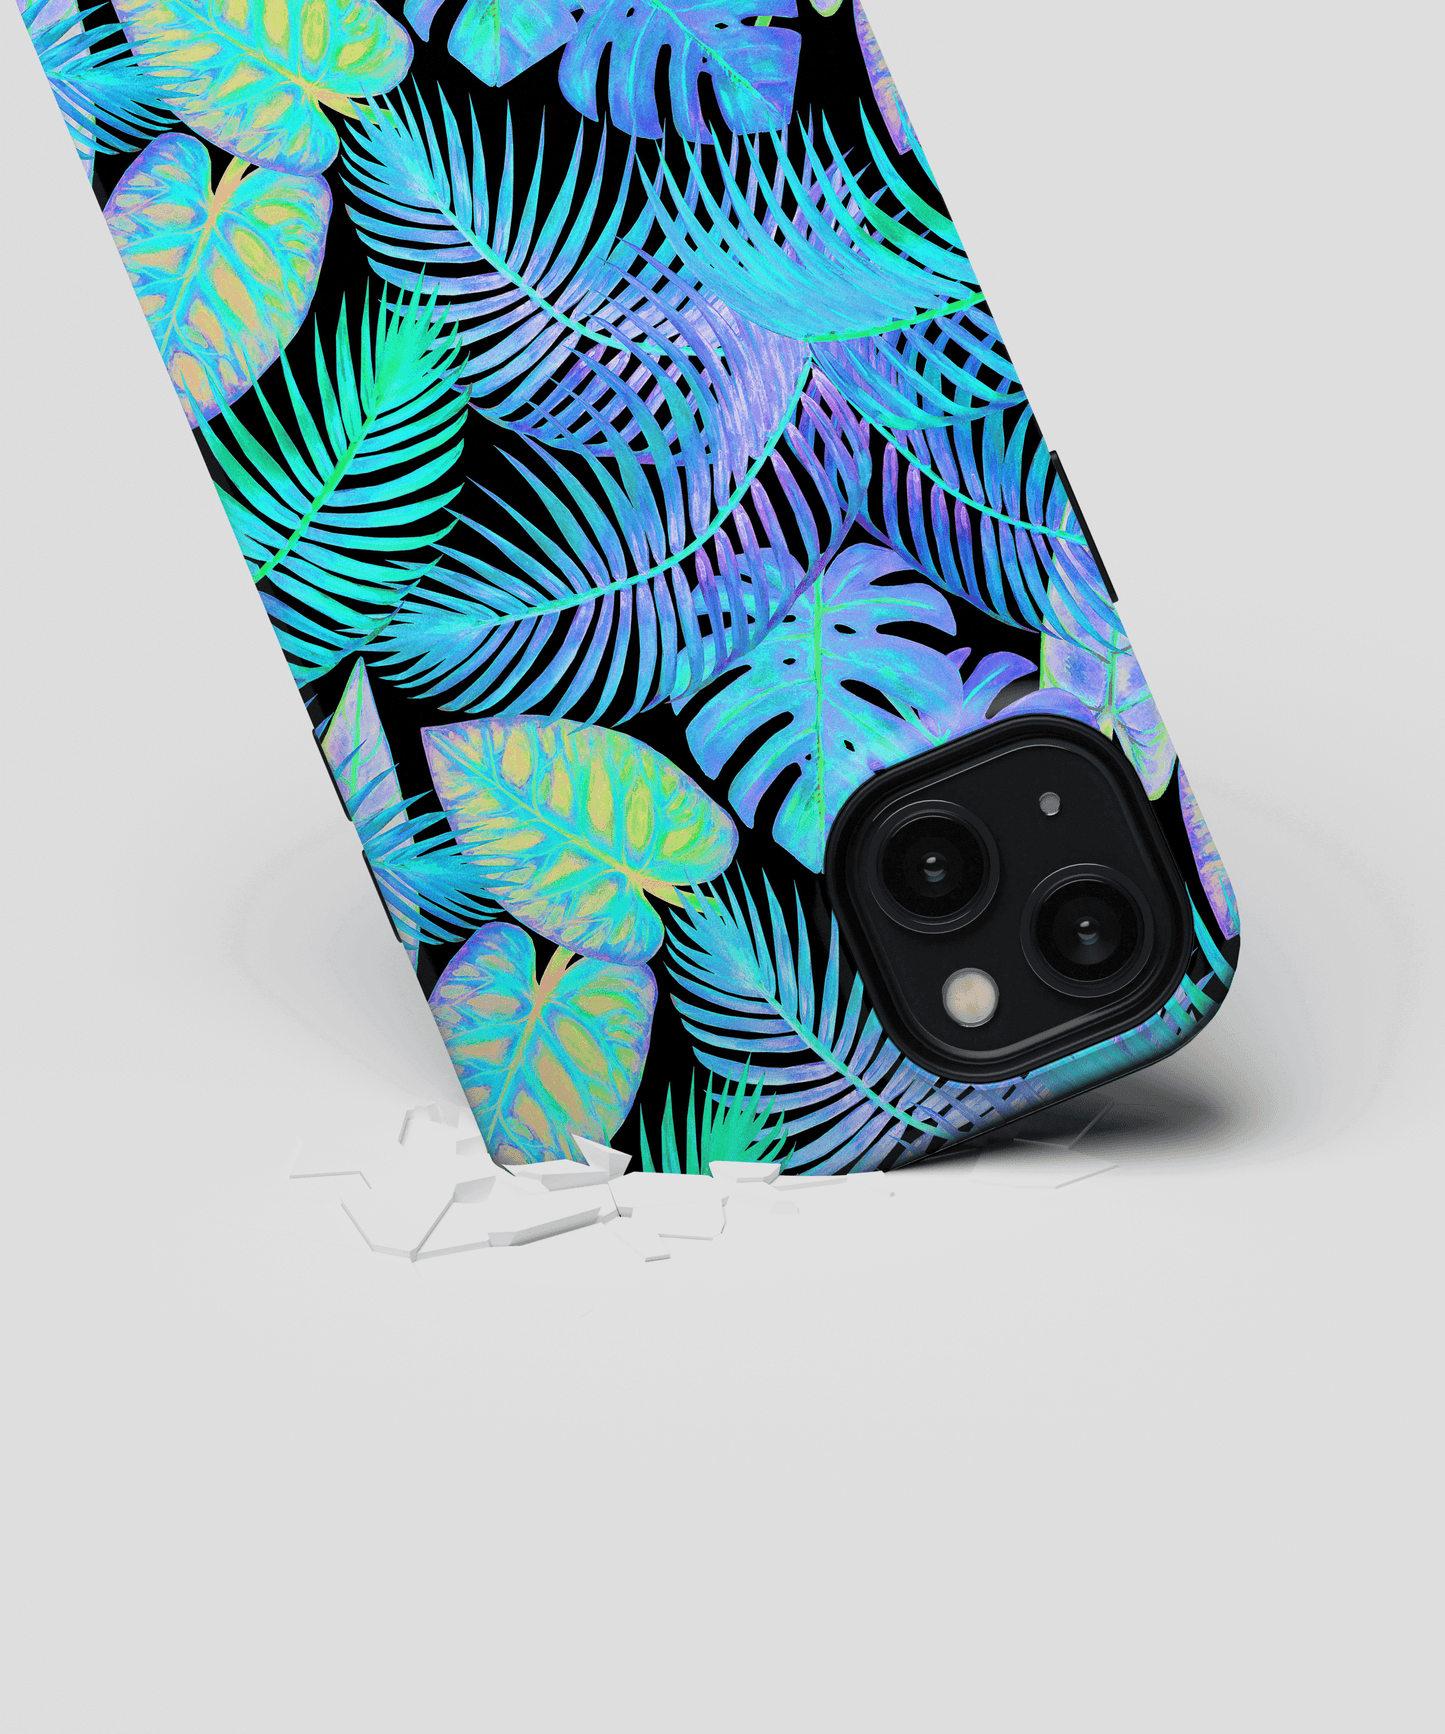 Tropic - Samsung Galaxy A70 phone case